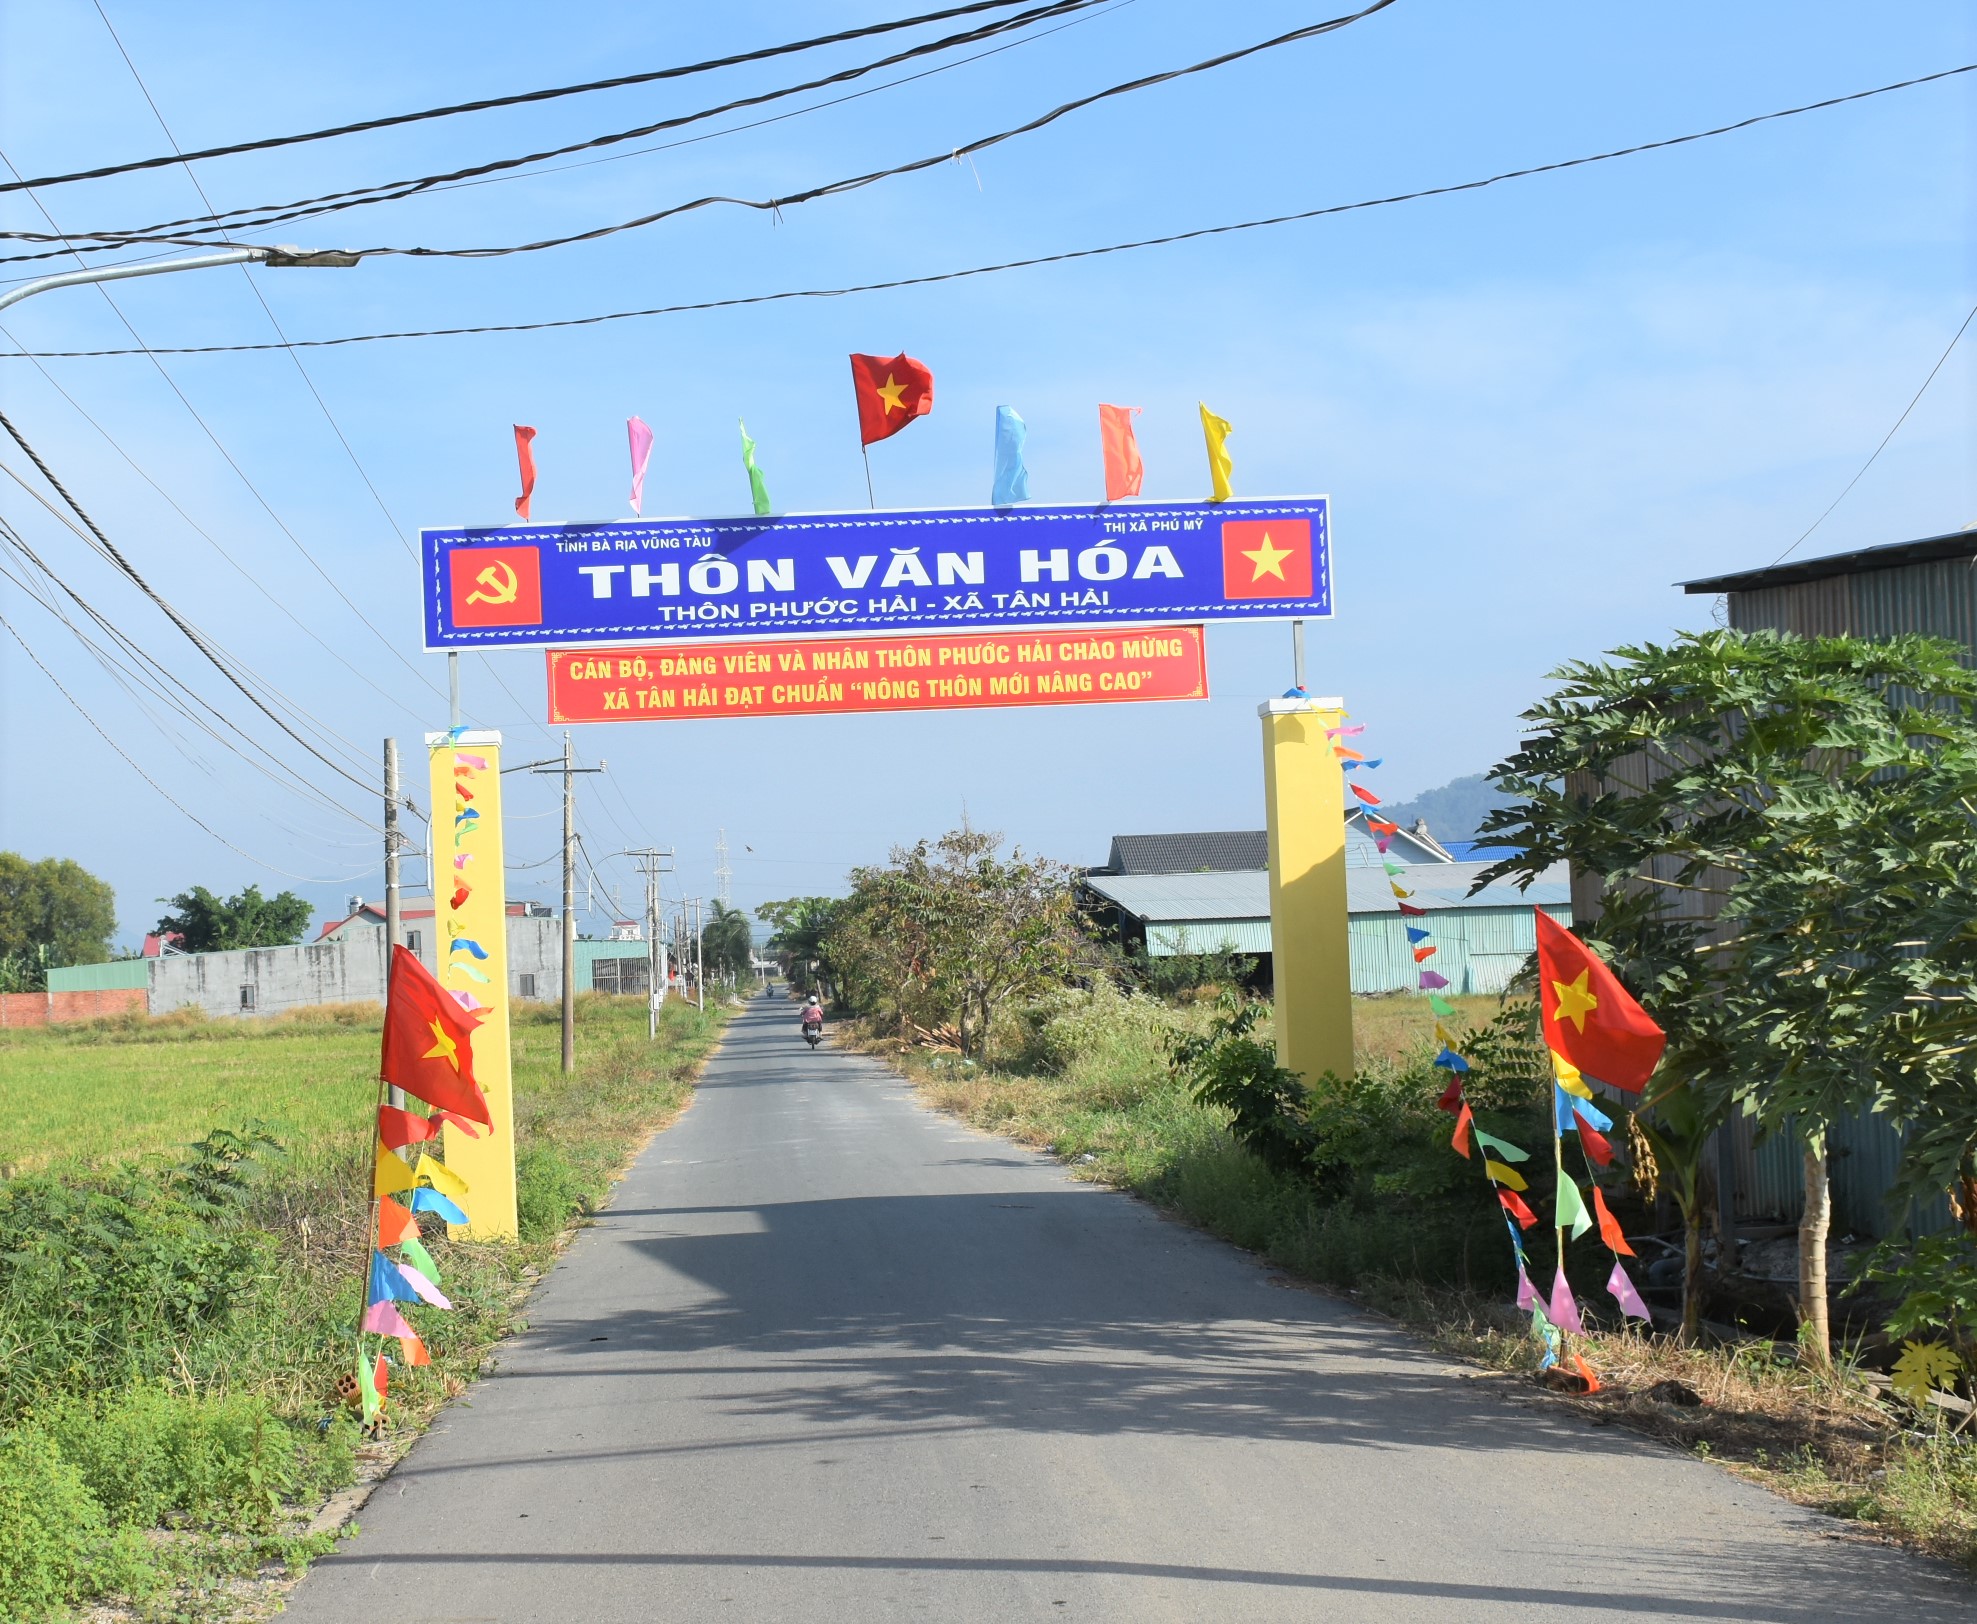 Chương trình xây dựng NTM đã thay đổi diện mạo làng quê nông thôn trên địa bàn tỉnh. Trong ảnh: Các tuyến đường giao thông nông thôn tại xã Tân Hải (TX. Phú Mỹ) được nâng cấp sạch, đẹp.